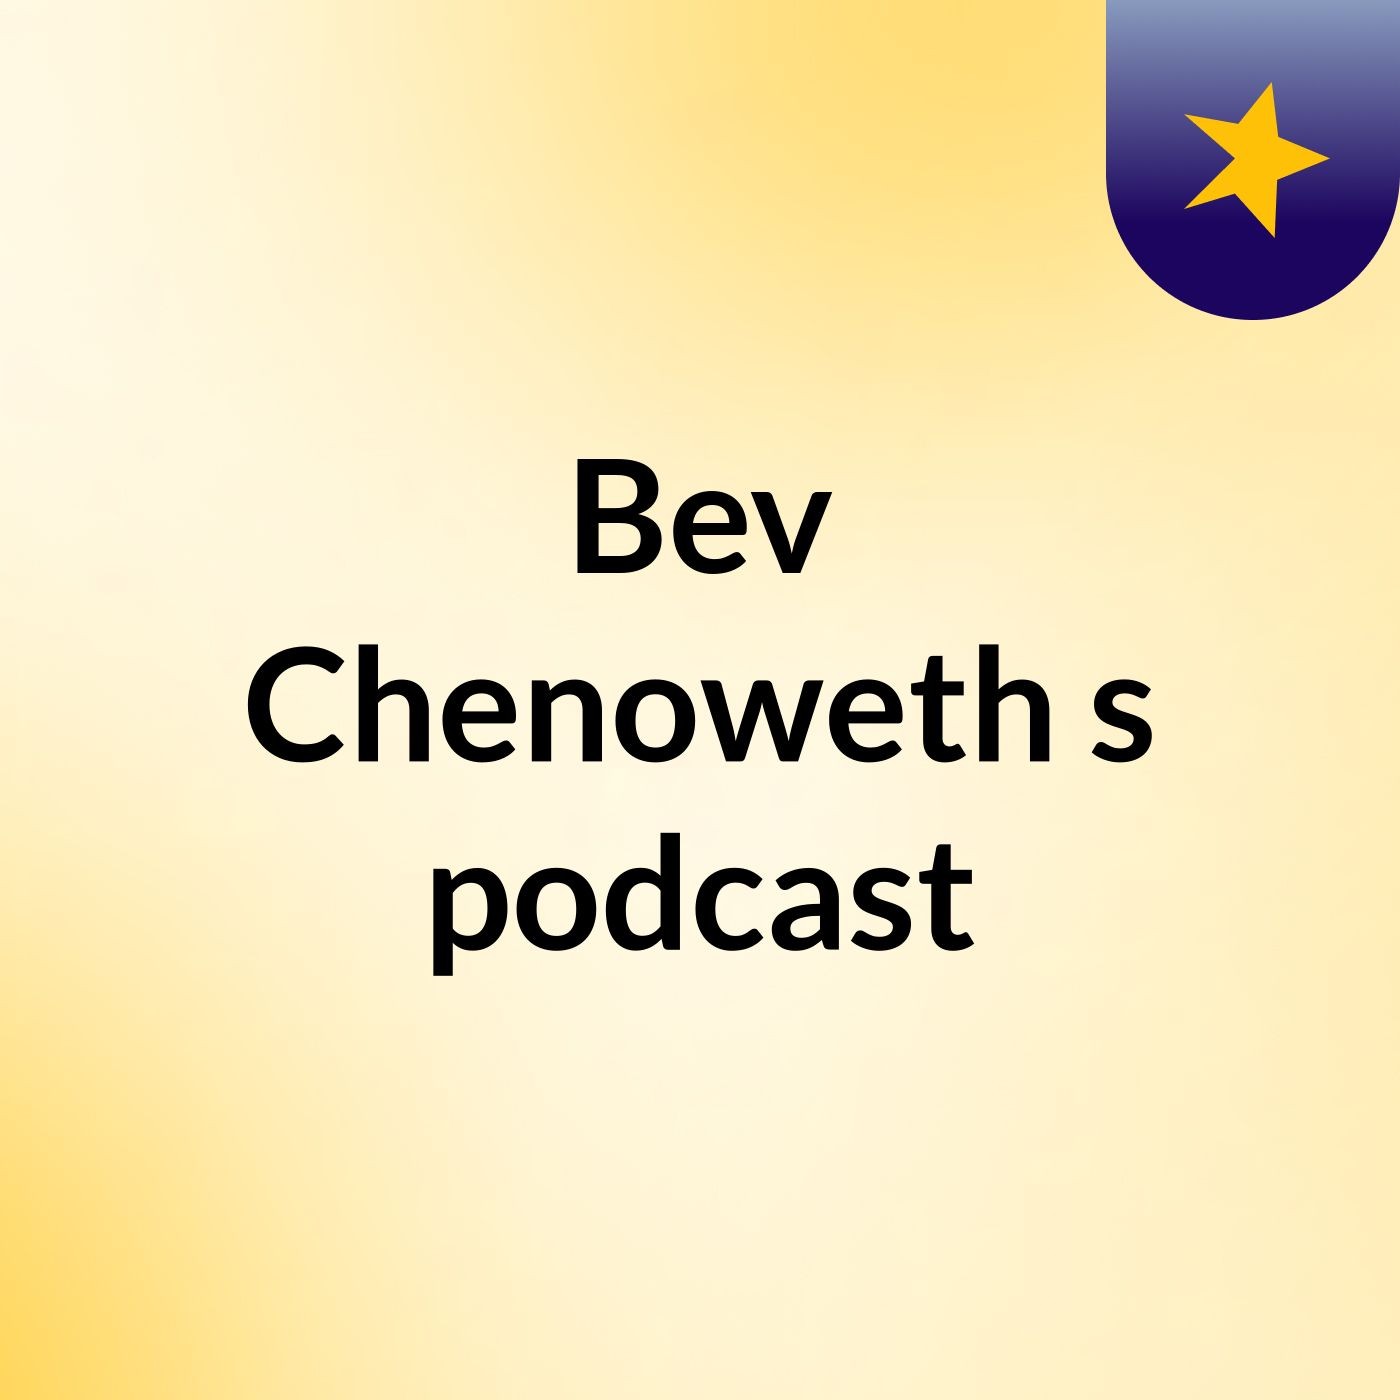 Bev Chenoweth's podcast